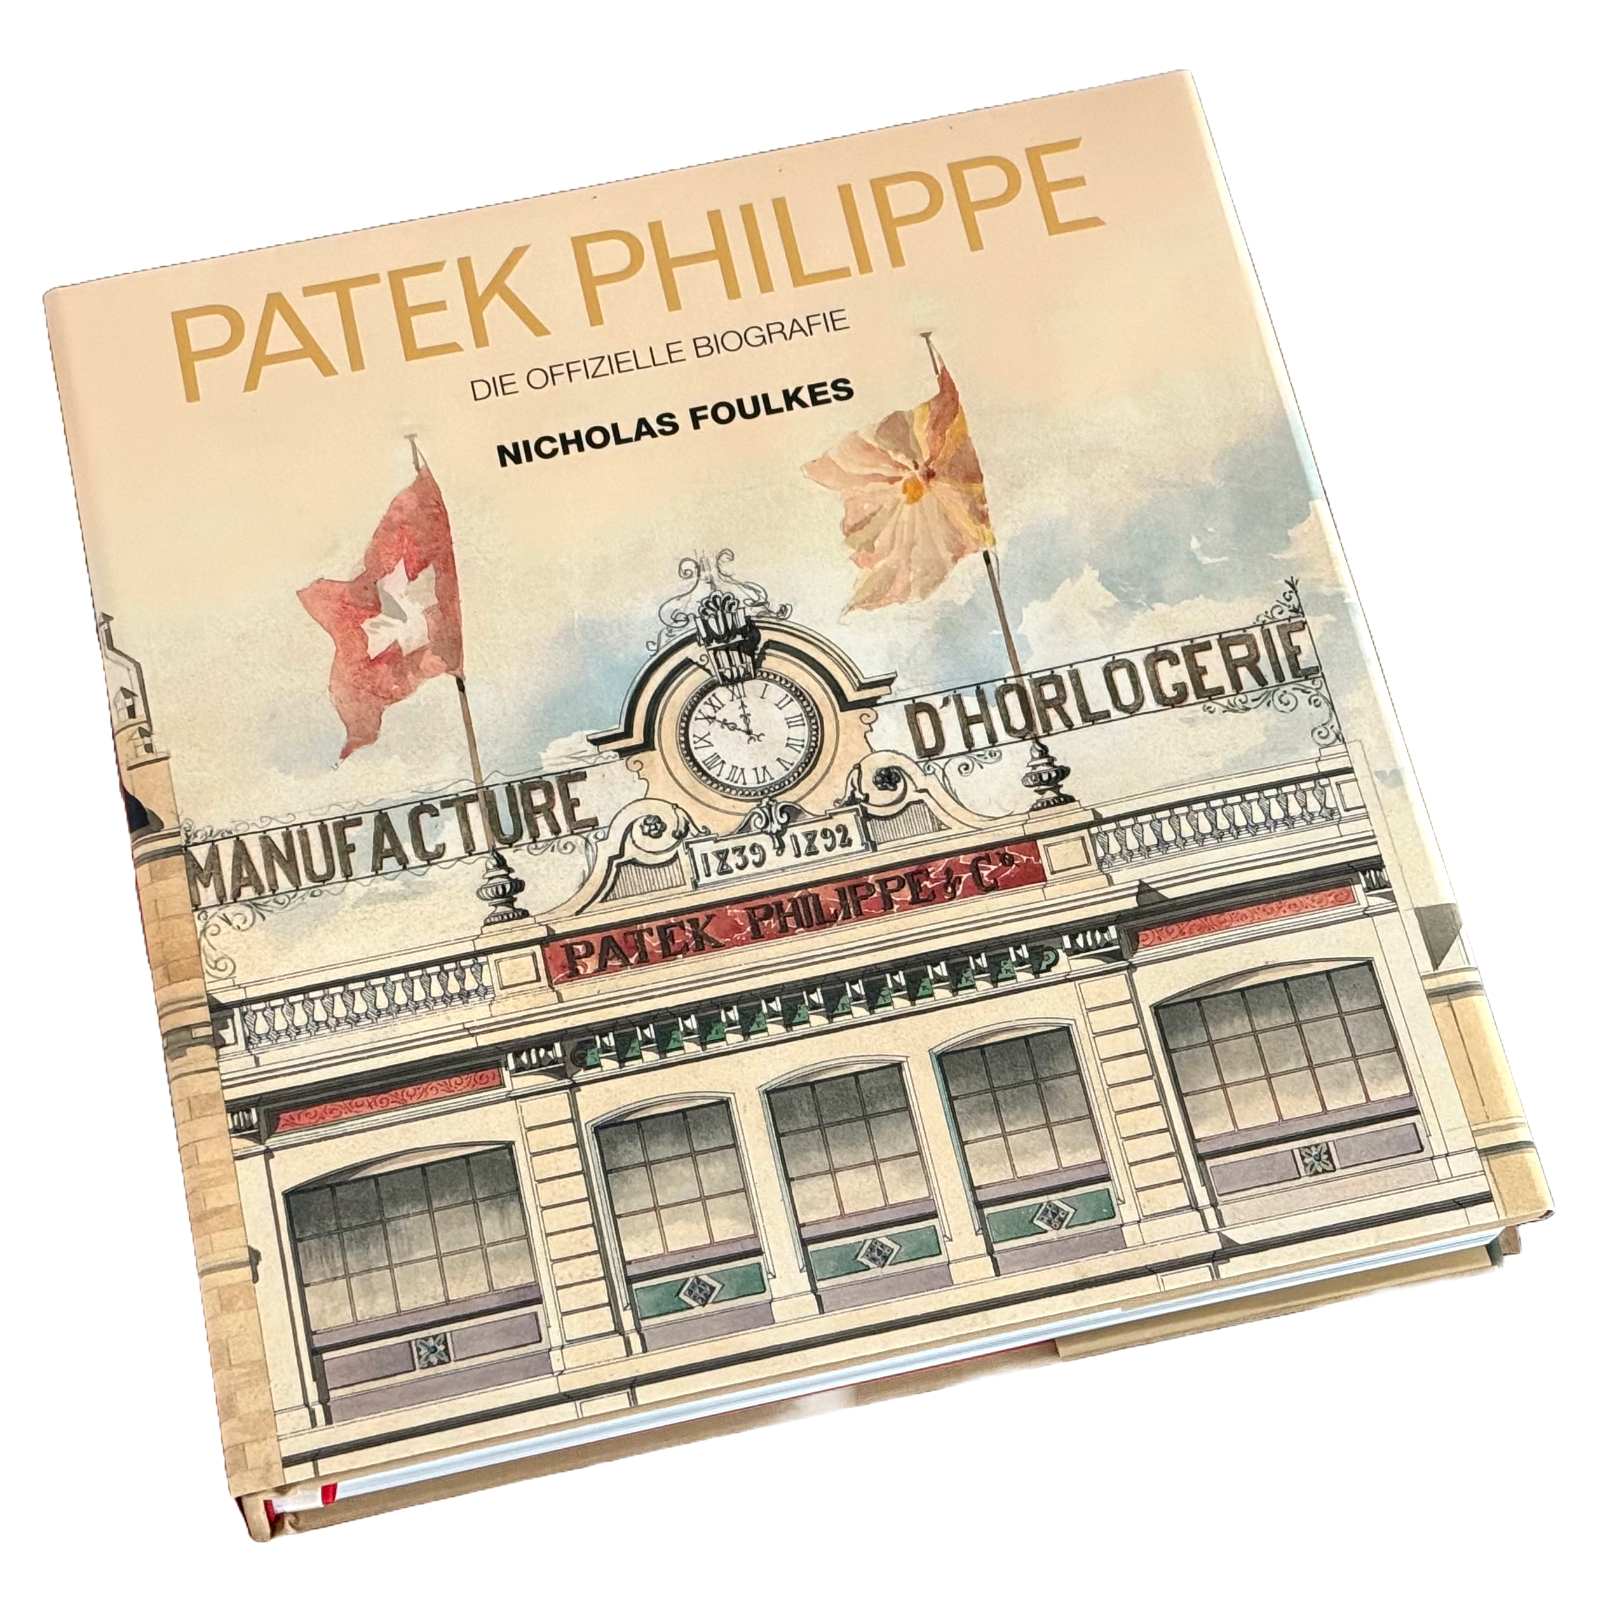  Patek Philippe die offizielle Biografie Nicholas Foulkes Katalog Buch Catalog Deutsch Buch Book